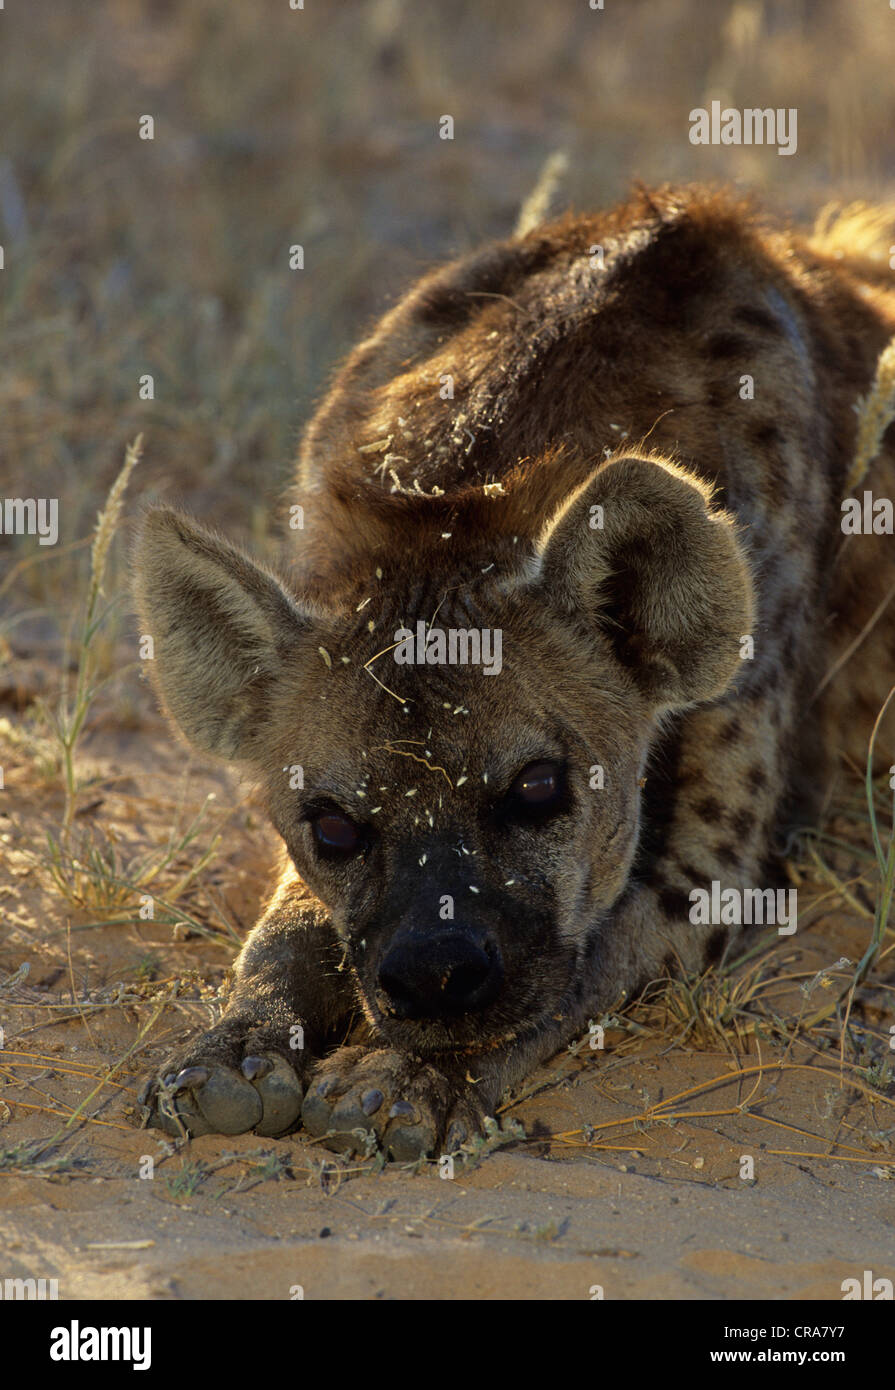 Spotted Hyena (Crocuta crocuta), Kgalagadi Transfrontier Park, Kalahari South Africa, Africa Stock Photo